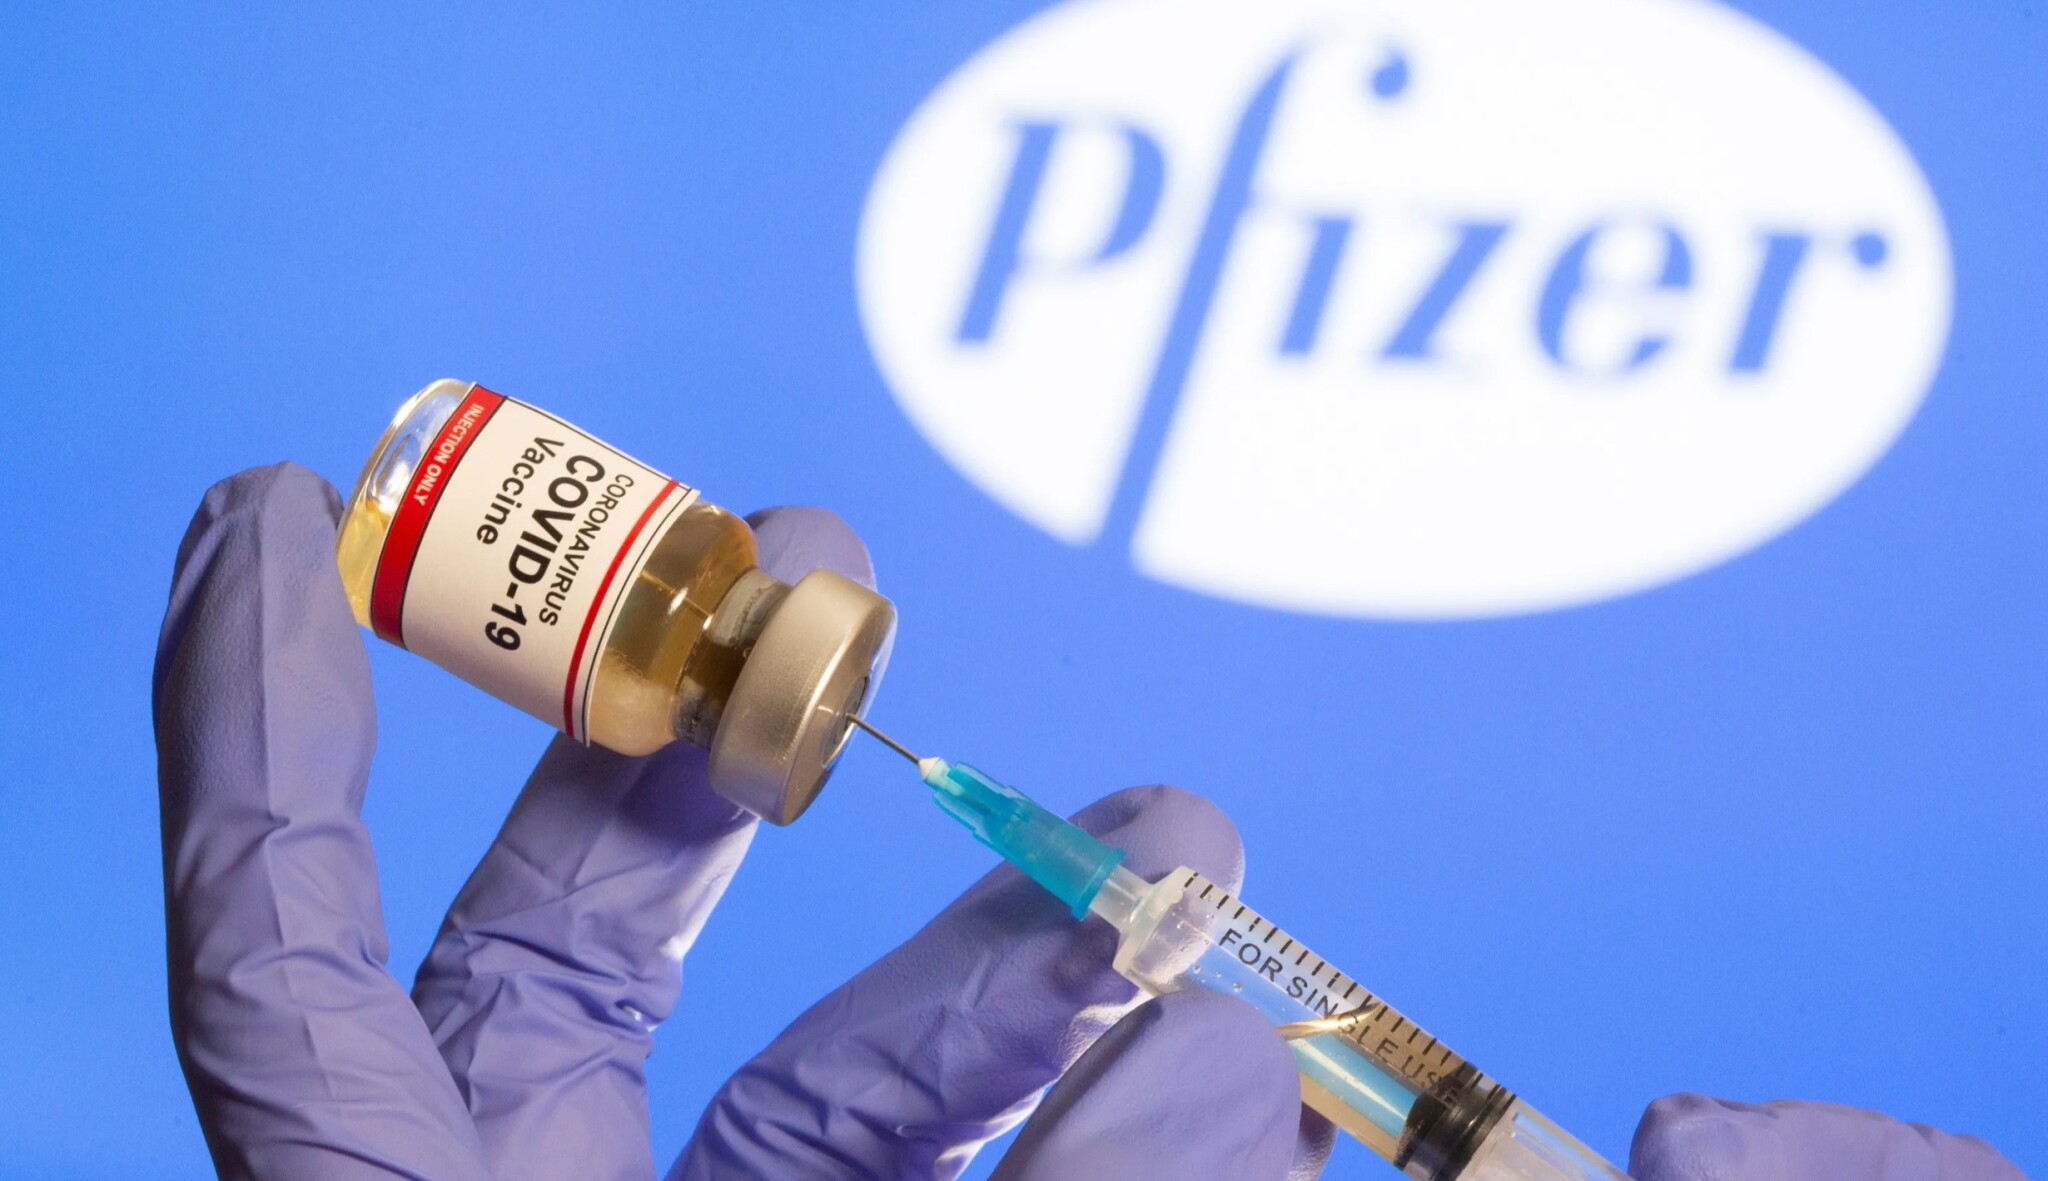 Pfizer zvýšil čtvrtletní zisk o 60 procent. Vyšší tržby čeká díky prodeji vakcíny